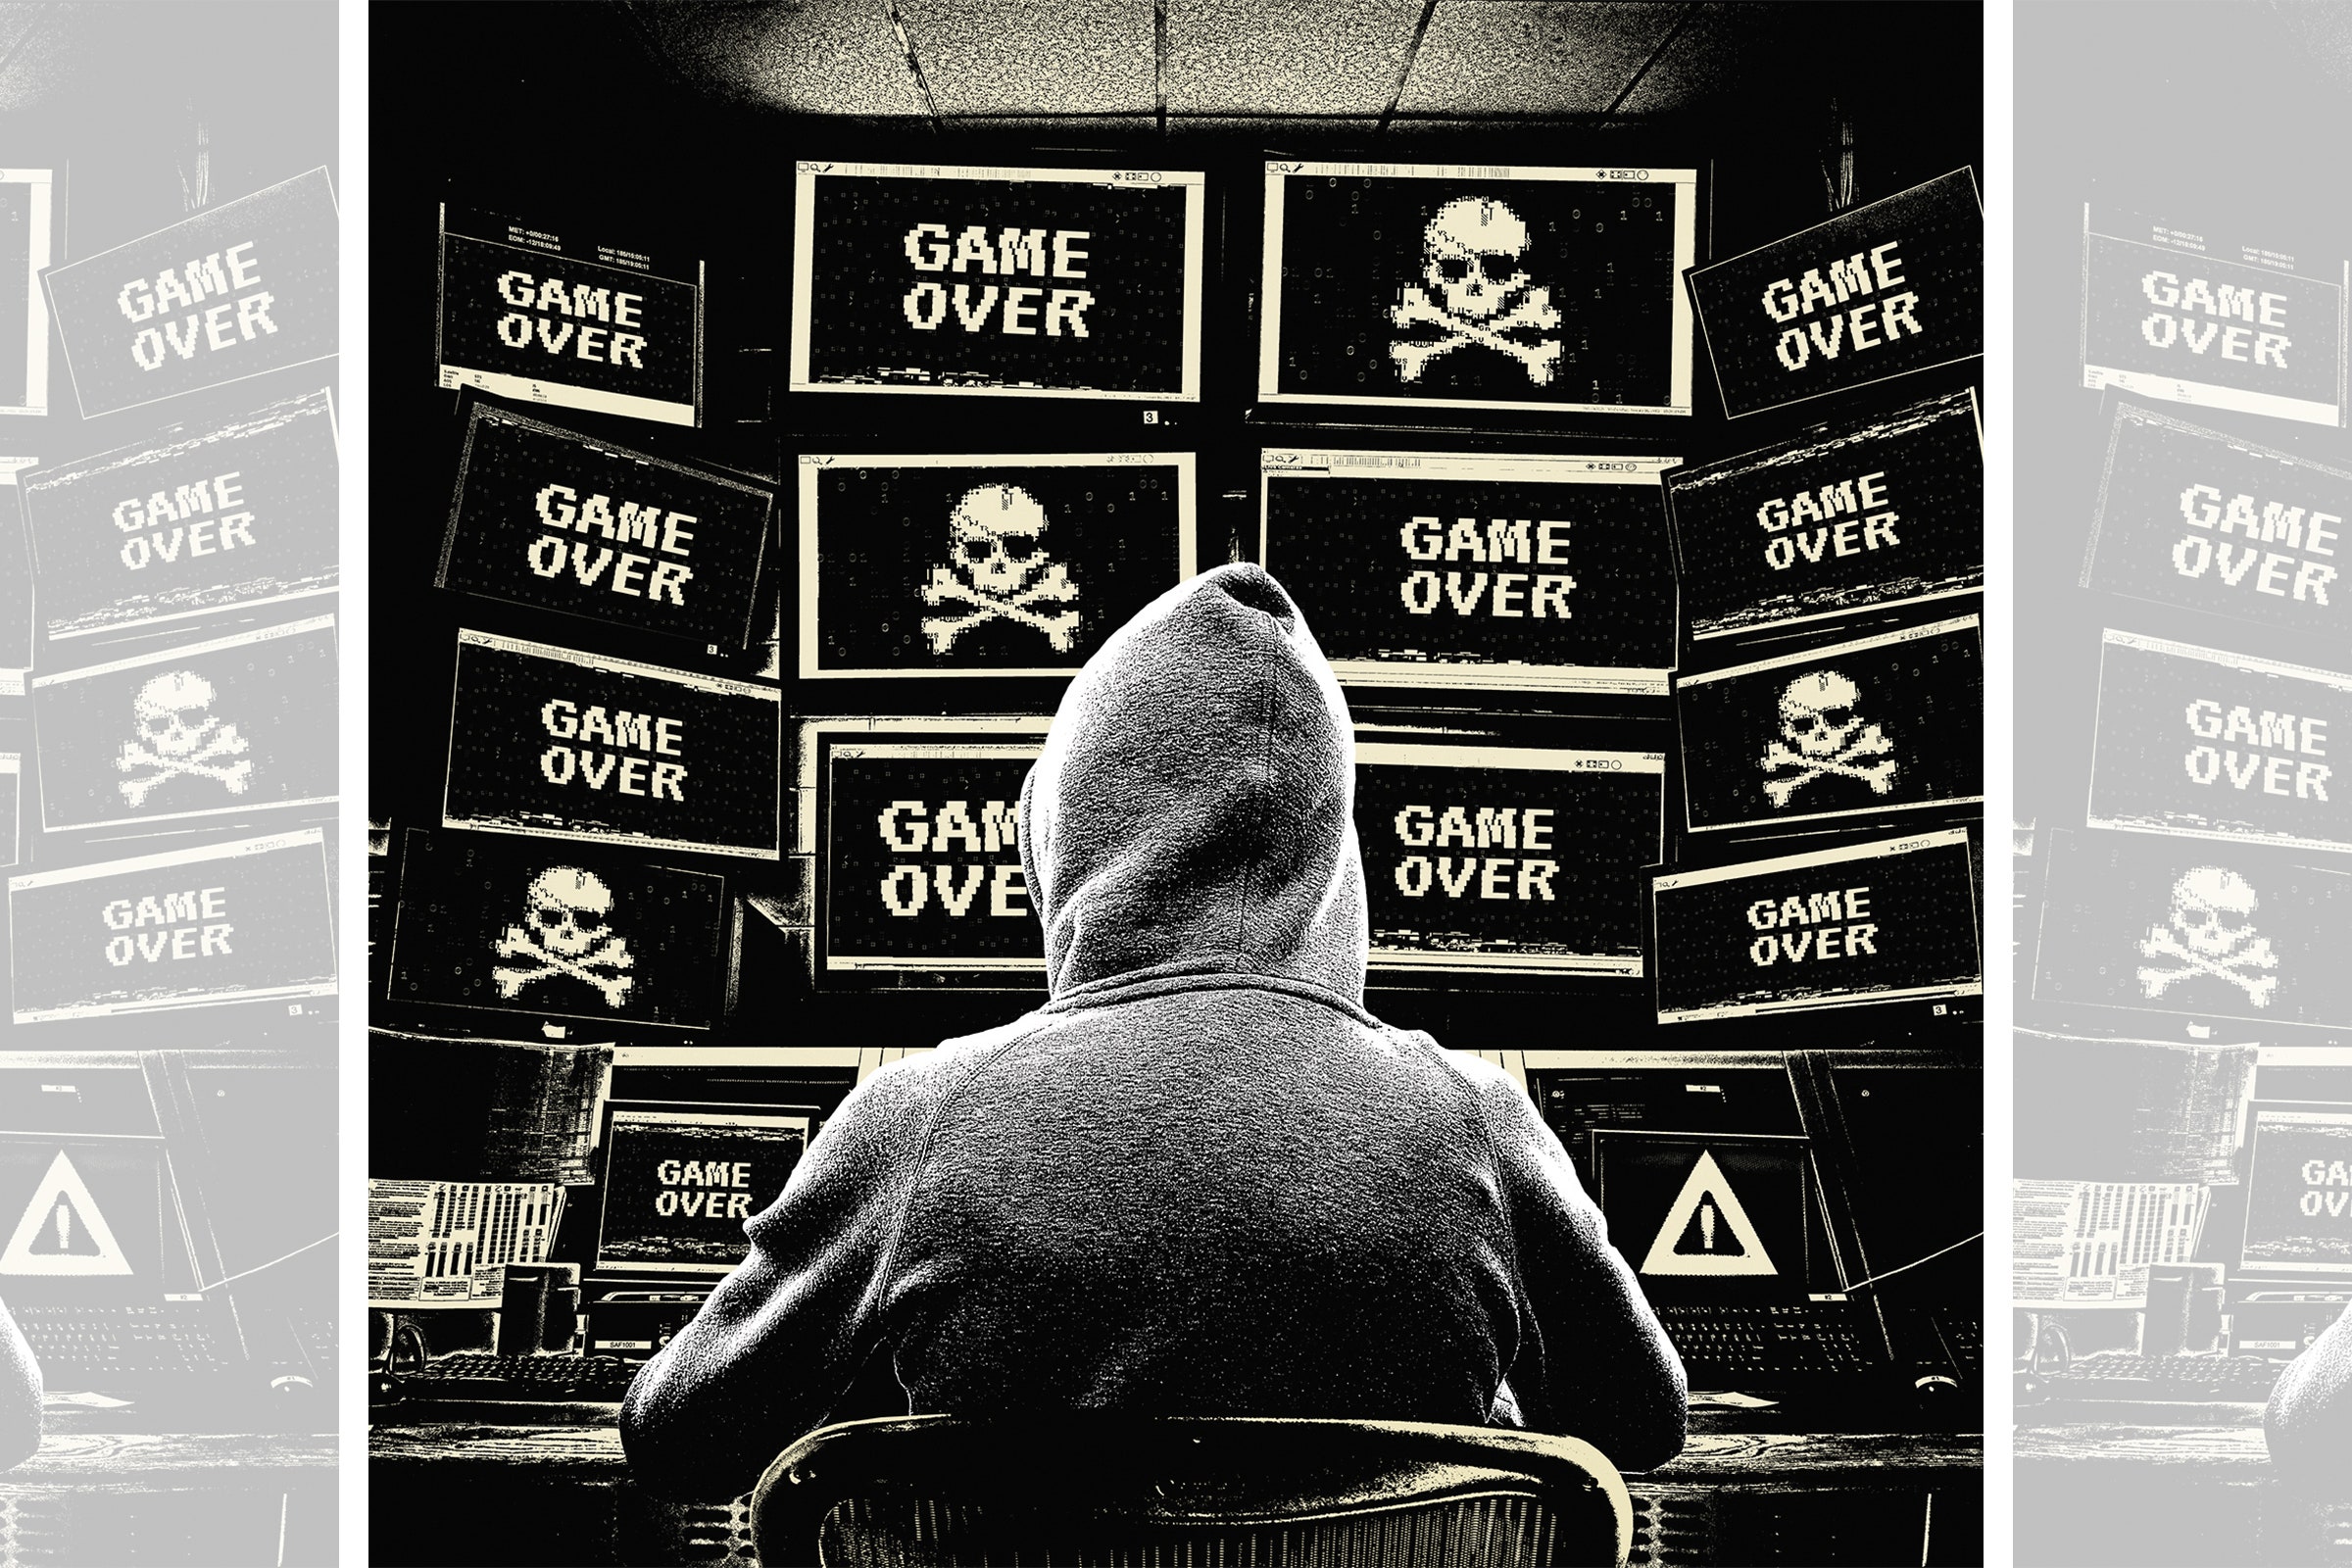 Uma ilustração de um hacker vestindo um moletom cinza sentado em frente a várias telas de computador onde se lê 